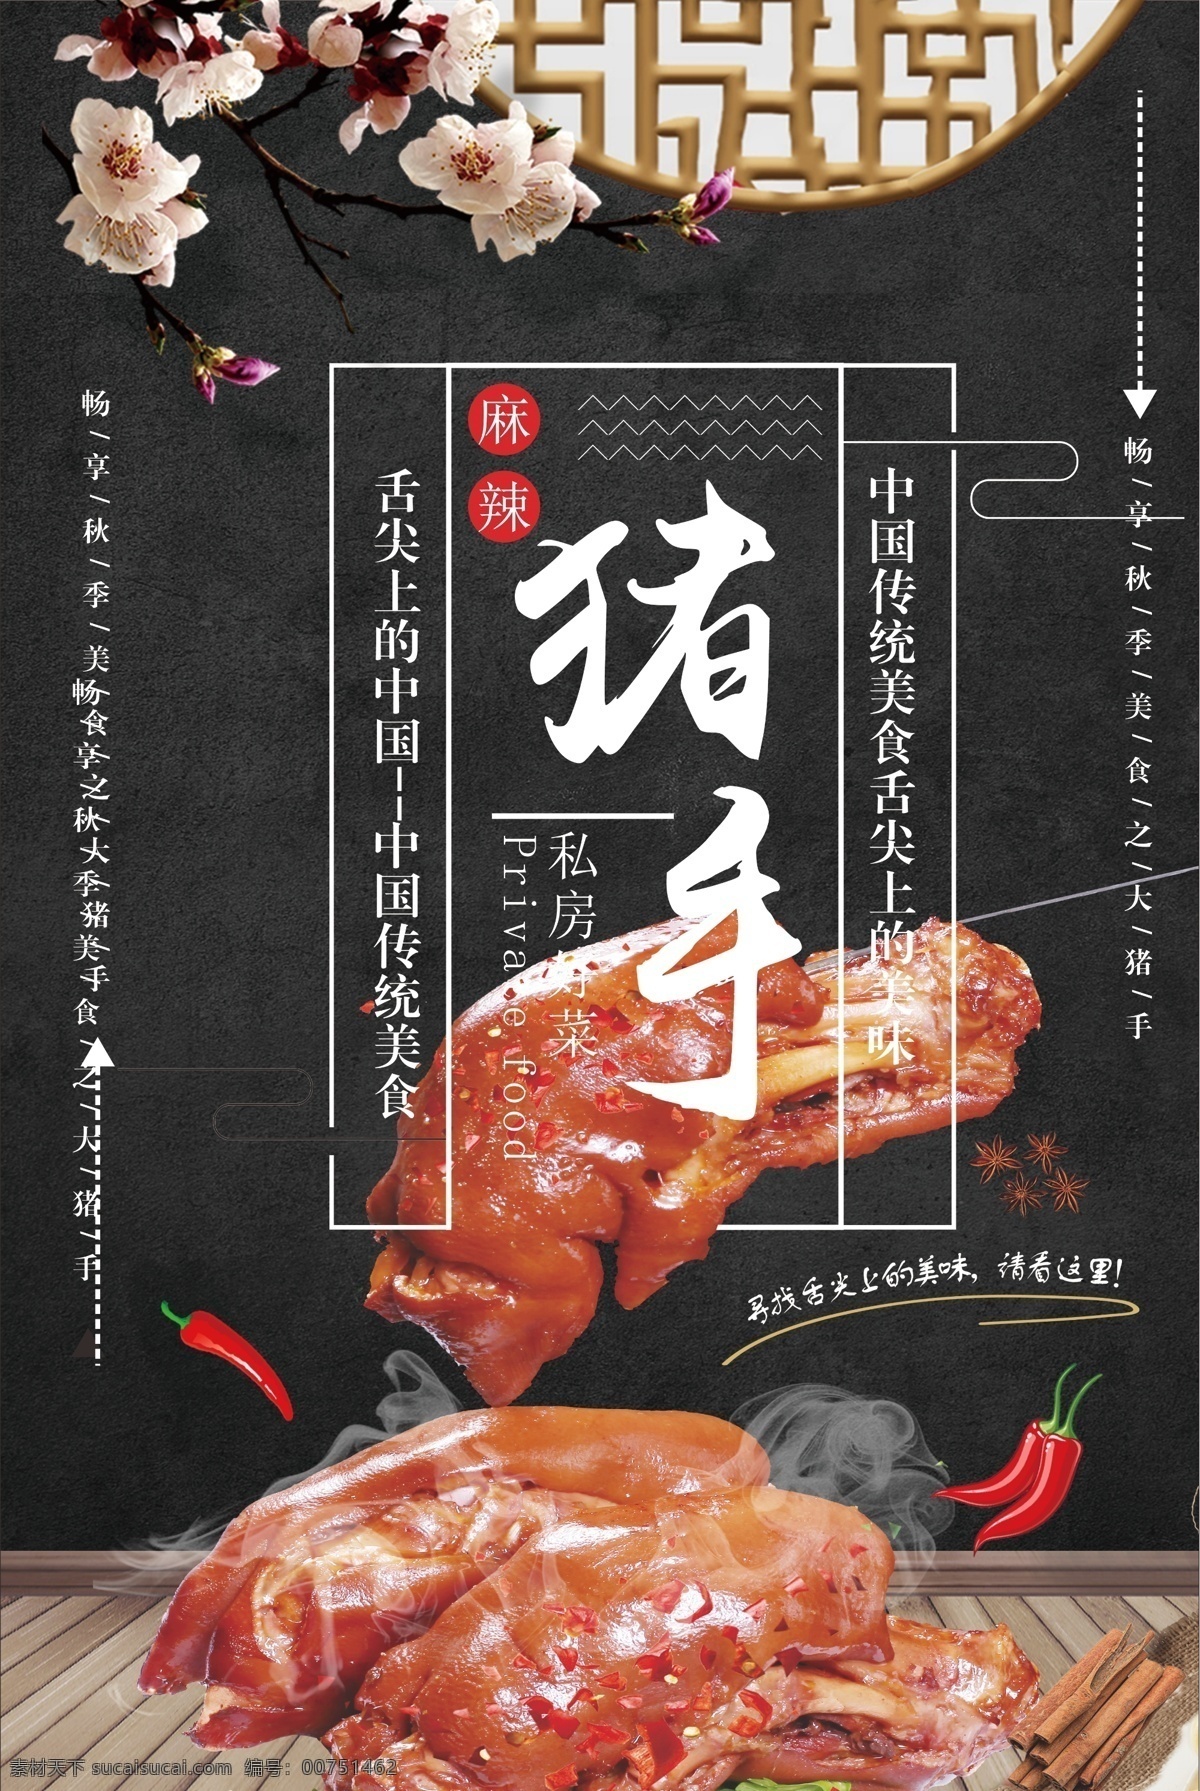 美食 餐饮 折扣 麻辣 猪手 饮食 舌尖上的中国 猪脚 美味 吃货 红烧 活动 餐饮美食 美食餐饮